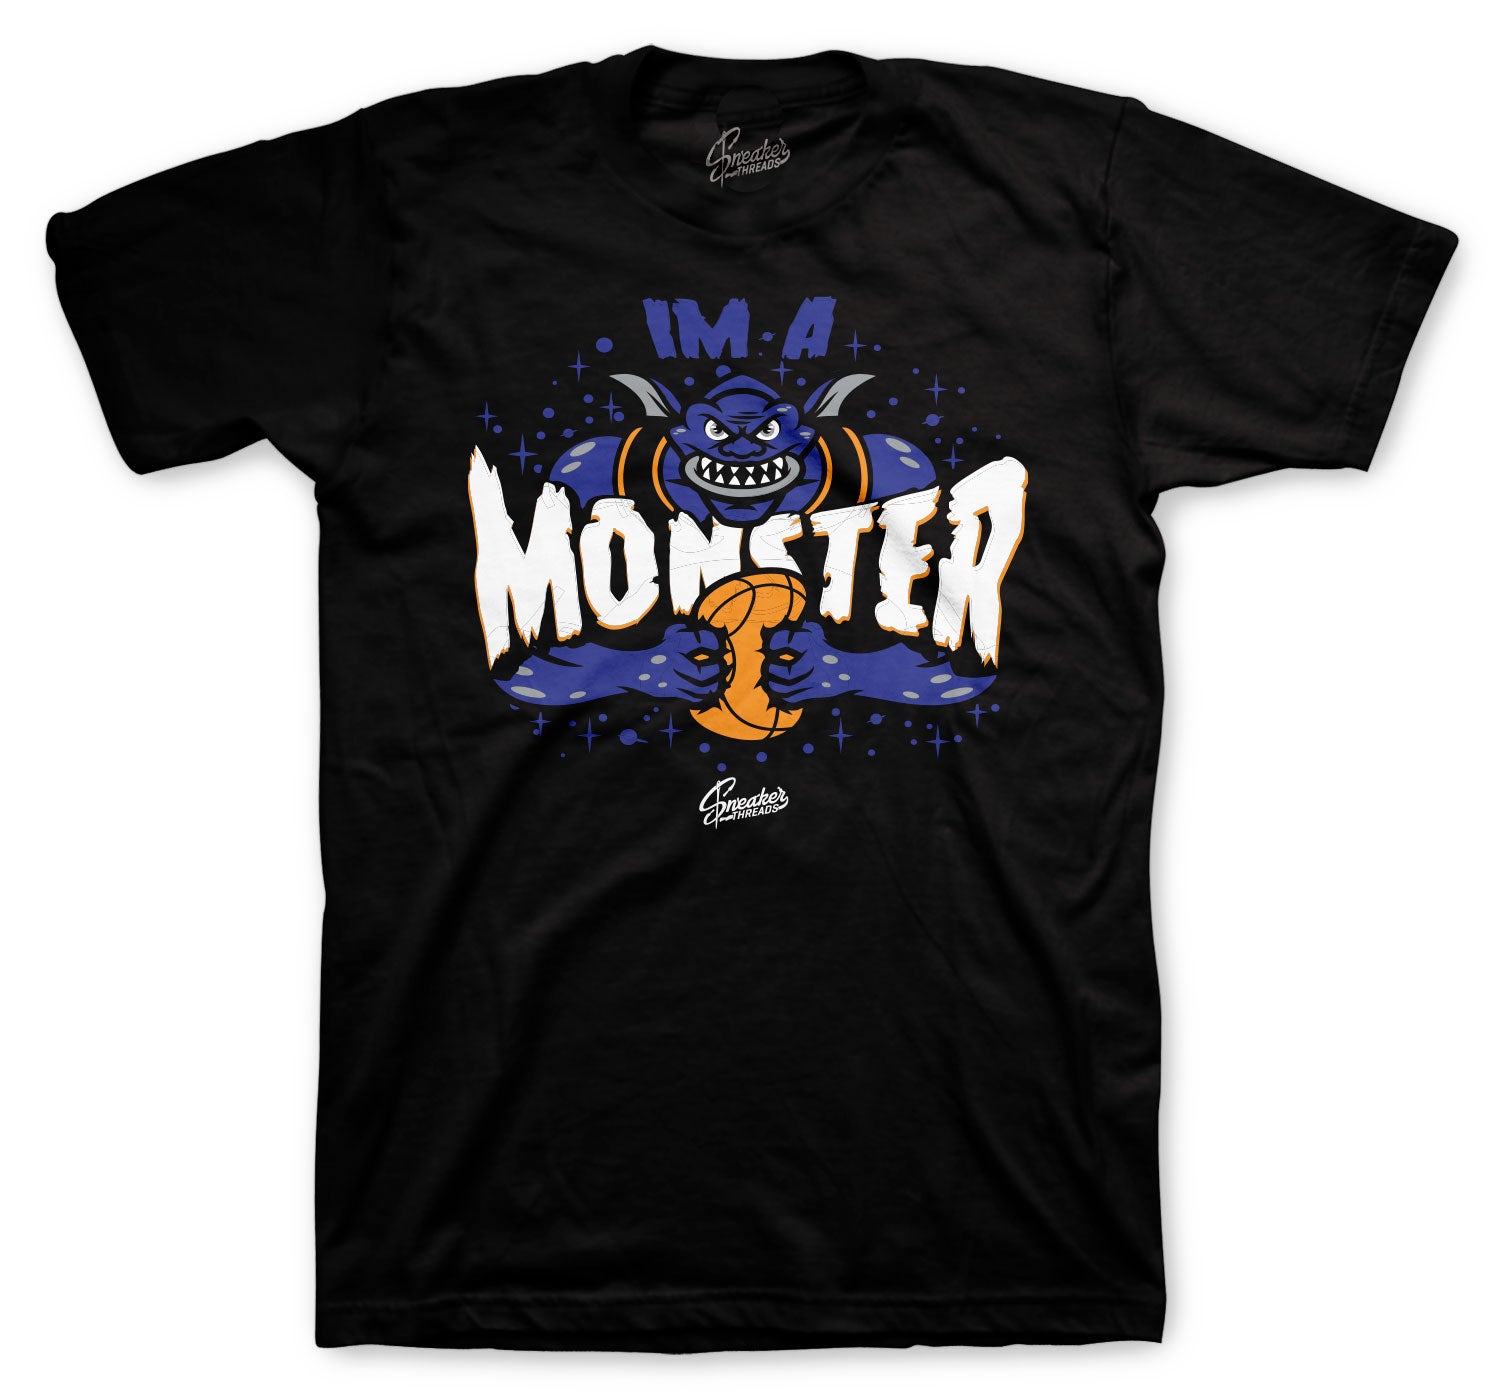 All Star 2020 Monstars Shirt  - I'm A Monster - Black